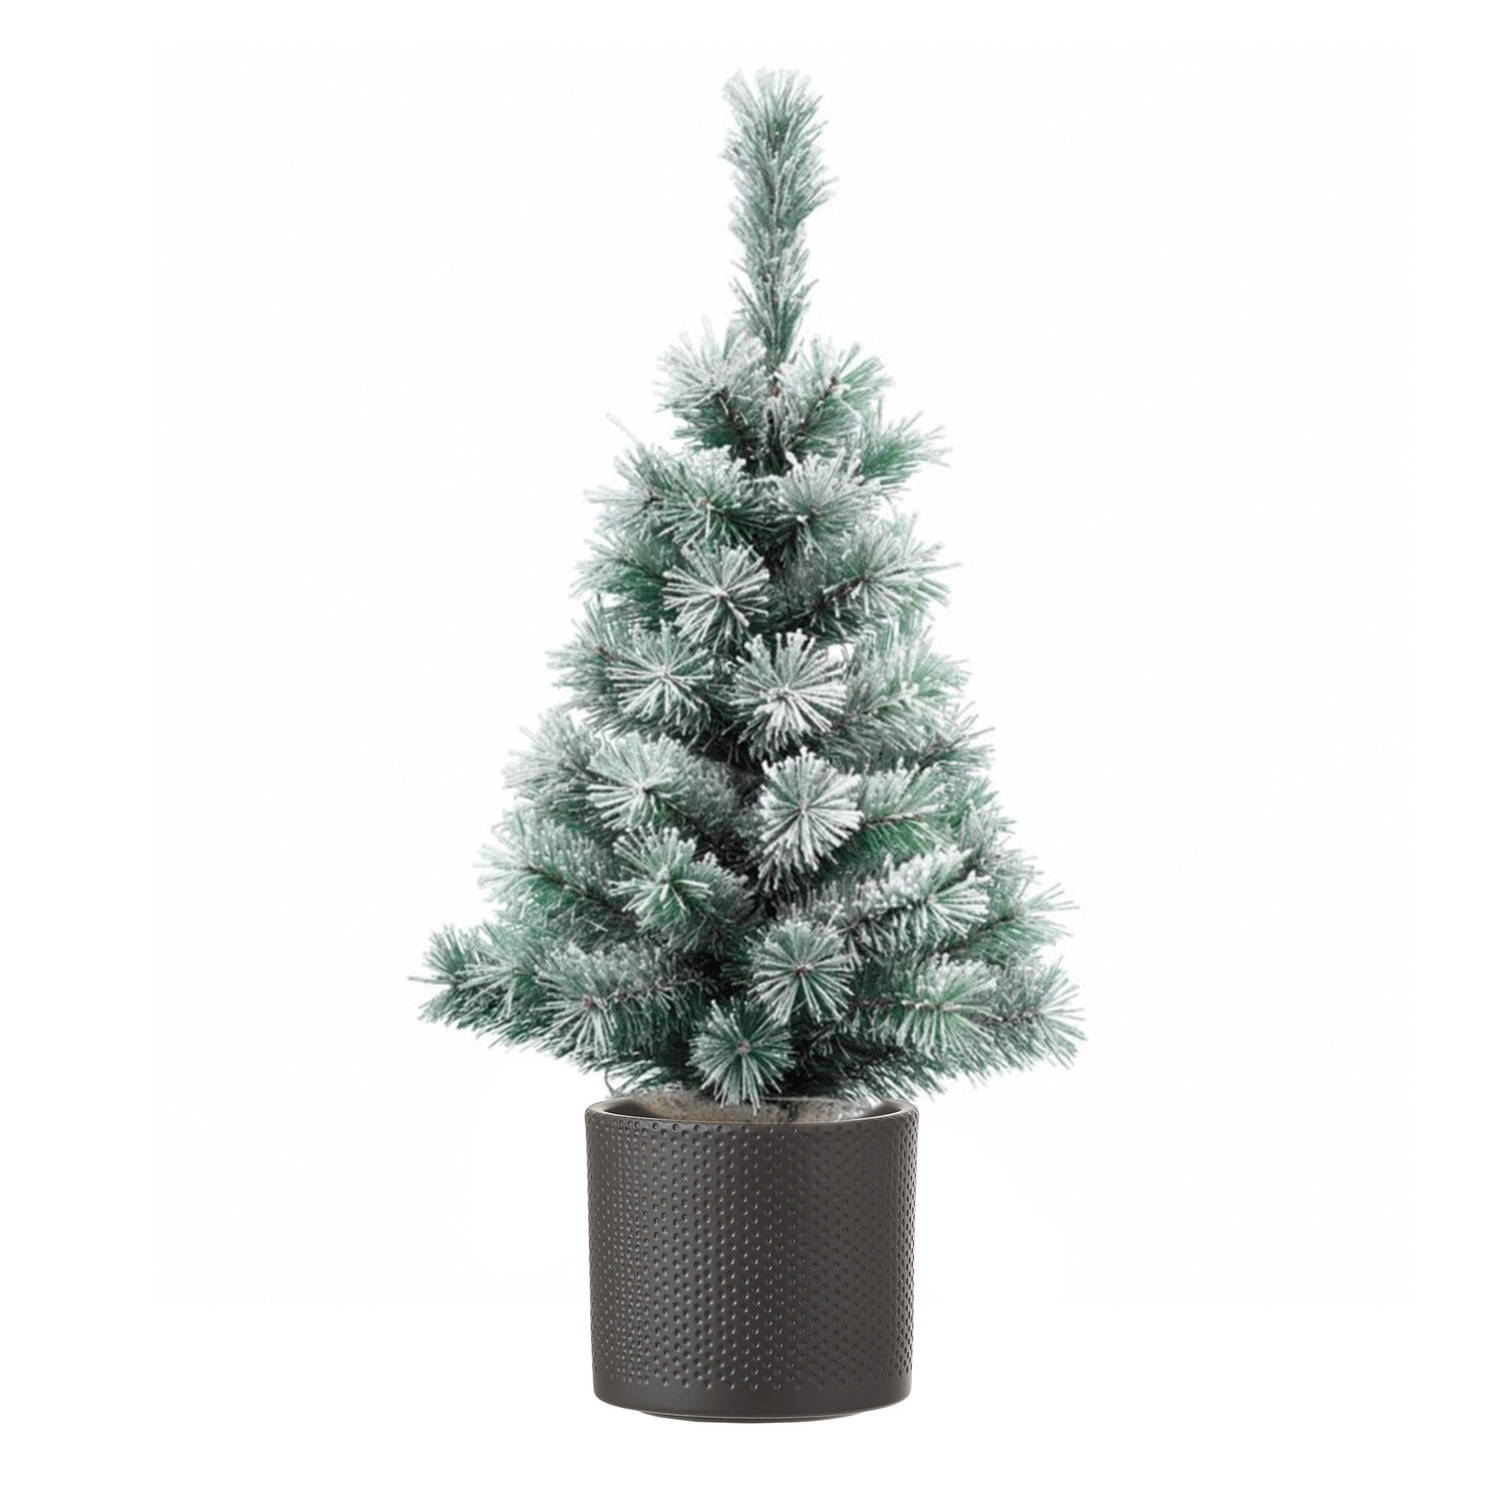 Volle besneeuwde kunst kerstboom 75 cm inclusief donkergrijze pot Kunstkerstboom